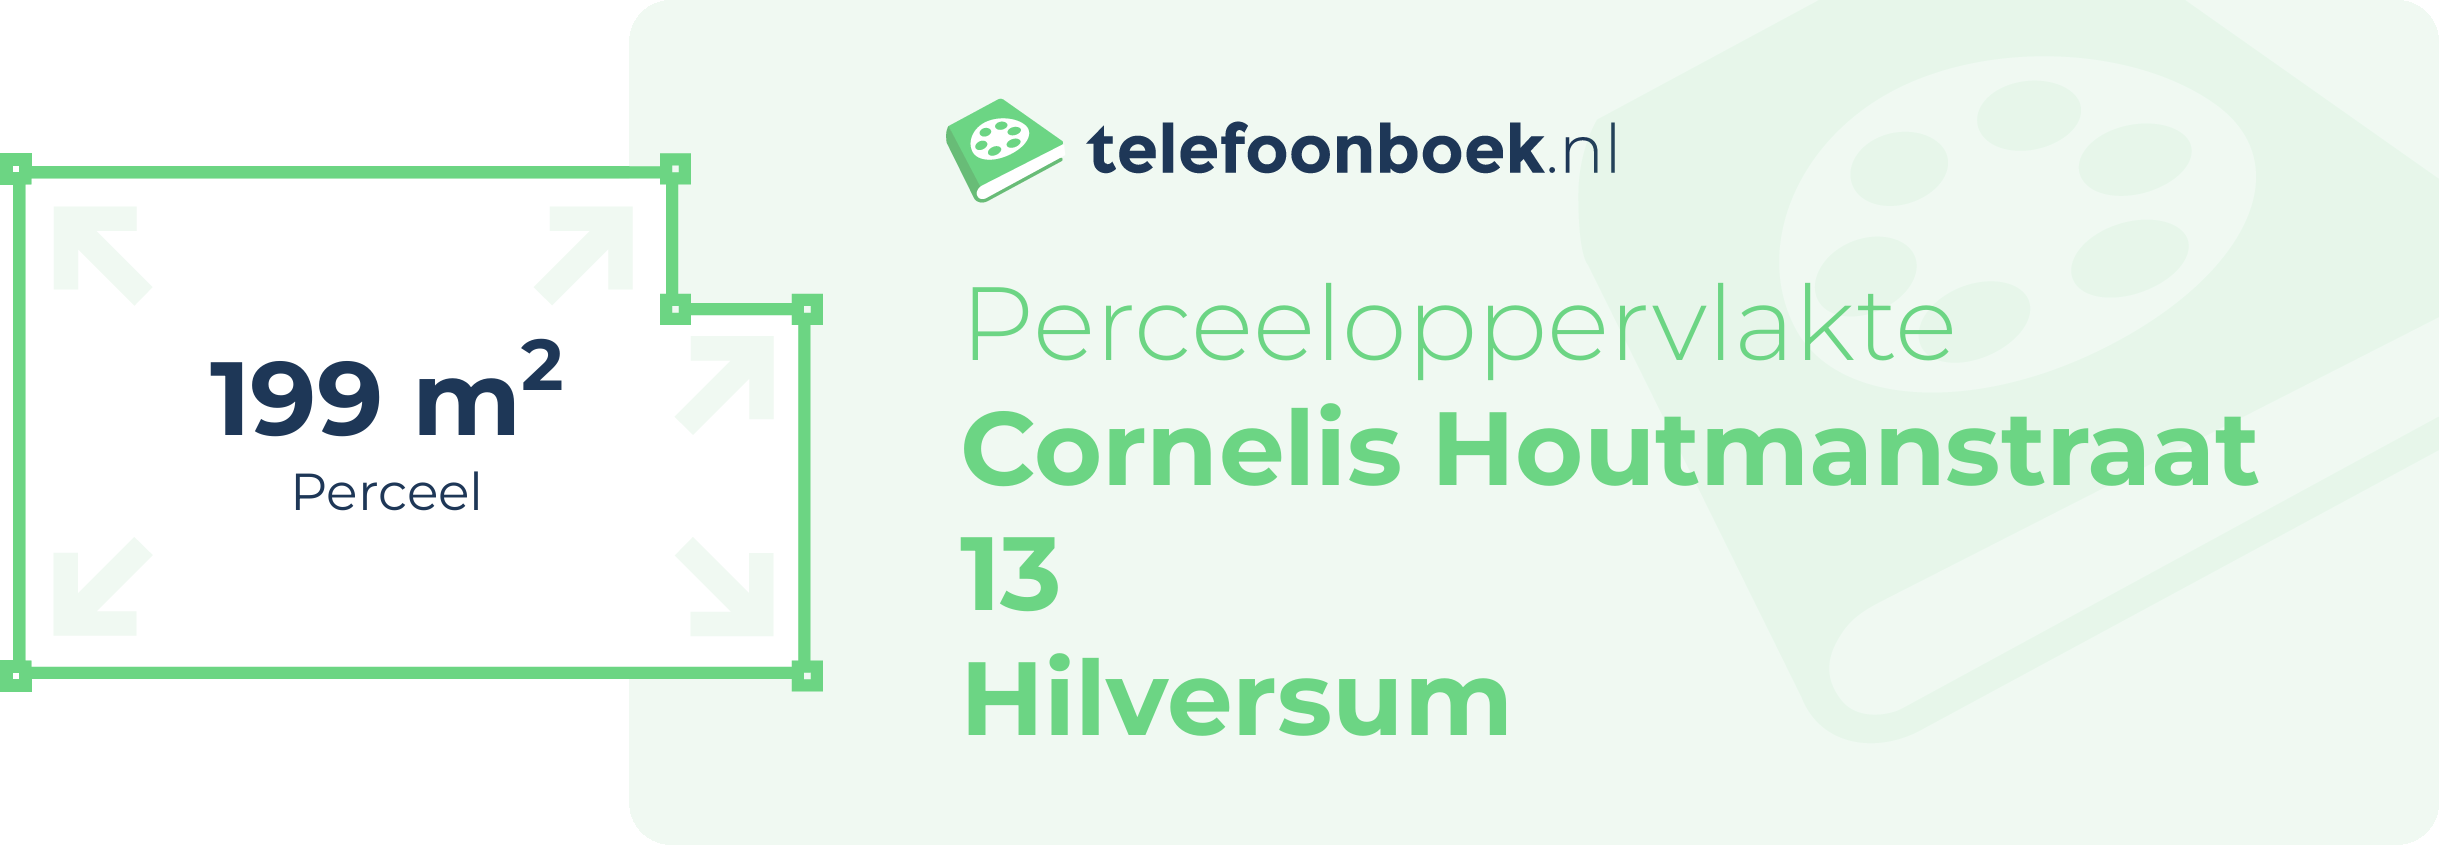 Perceeloppervlakte Cornelis Houtmanstraat 13 Hilversum